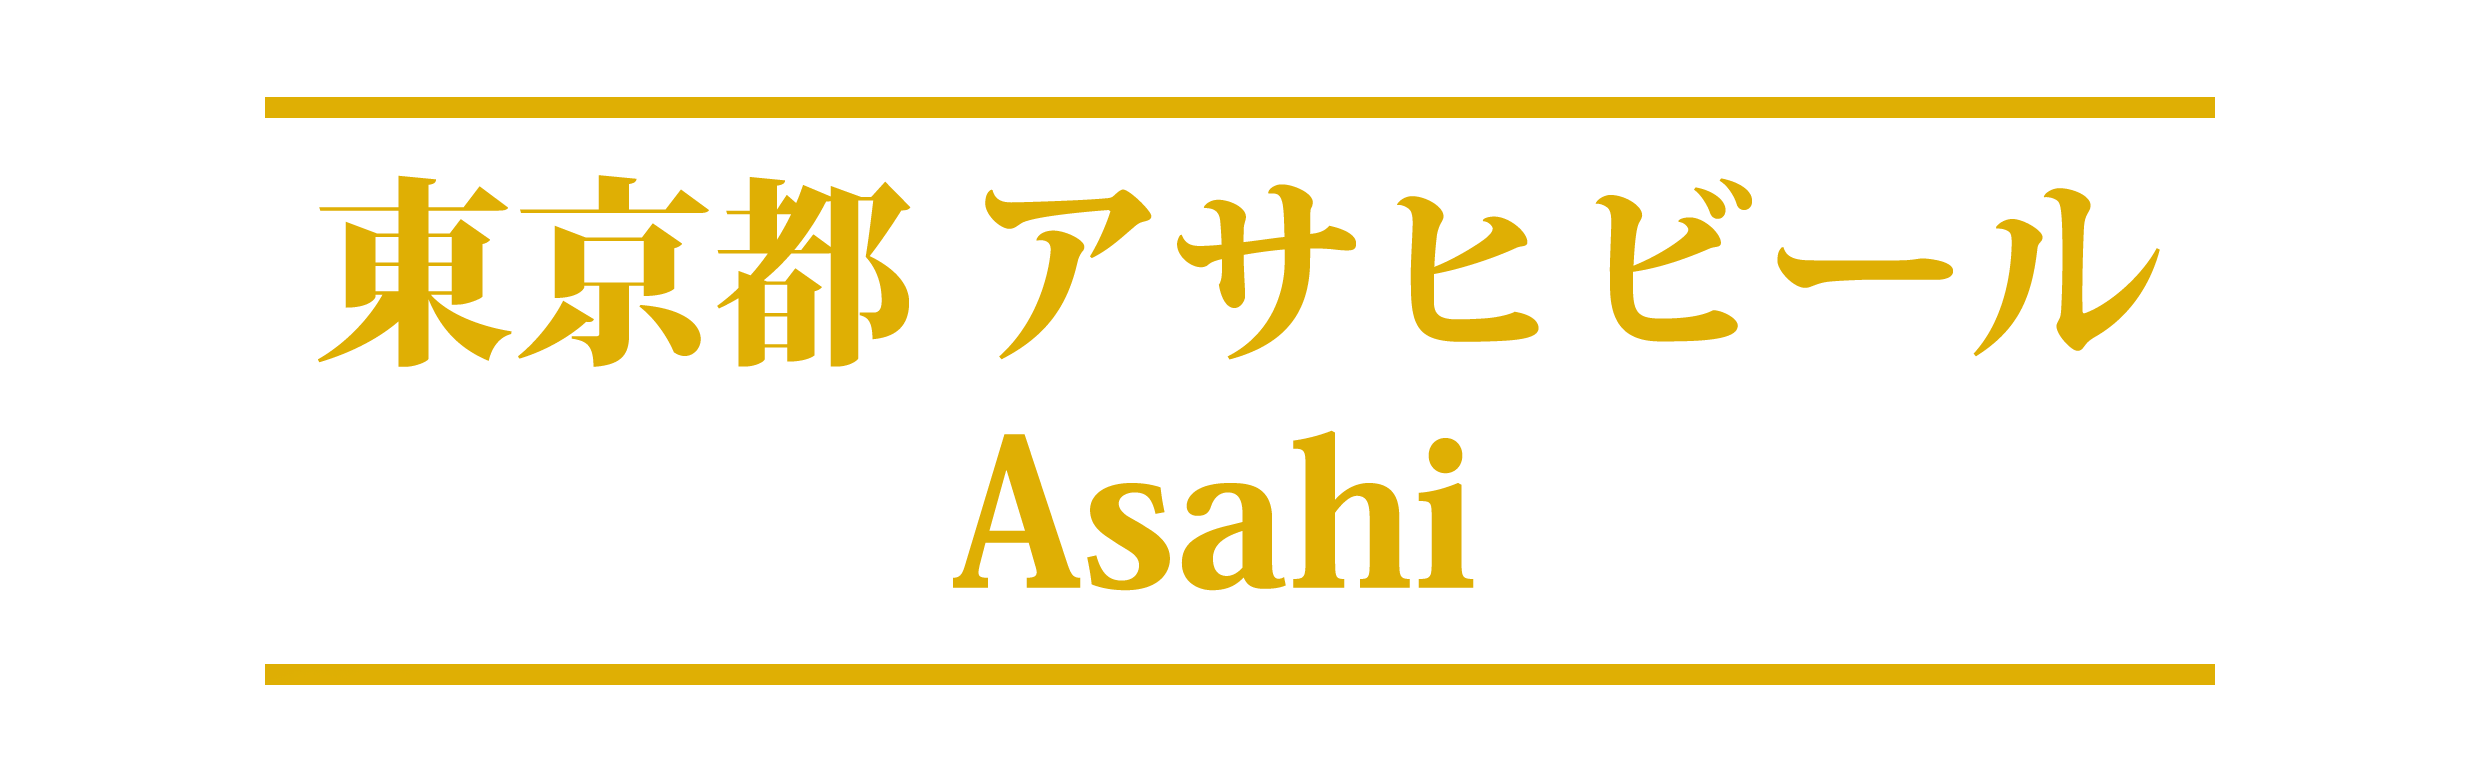 Asahi, 